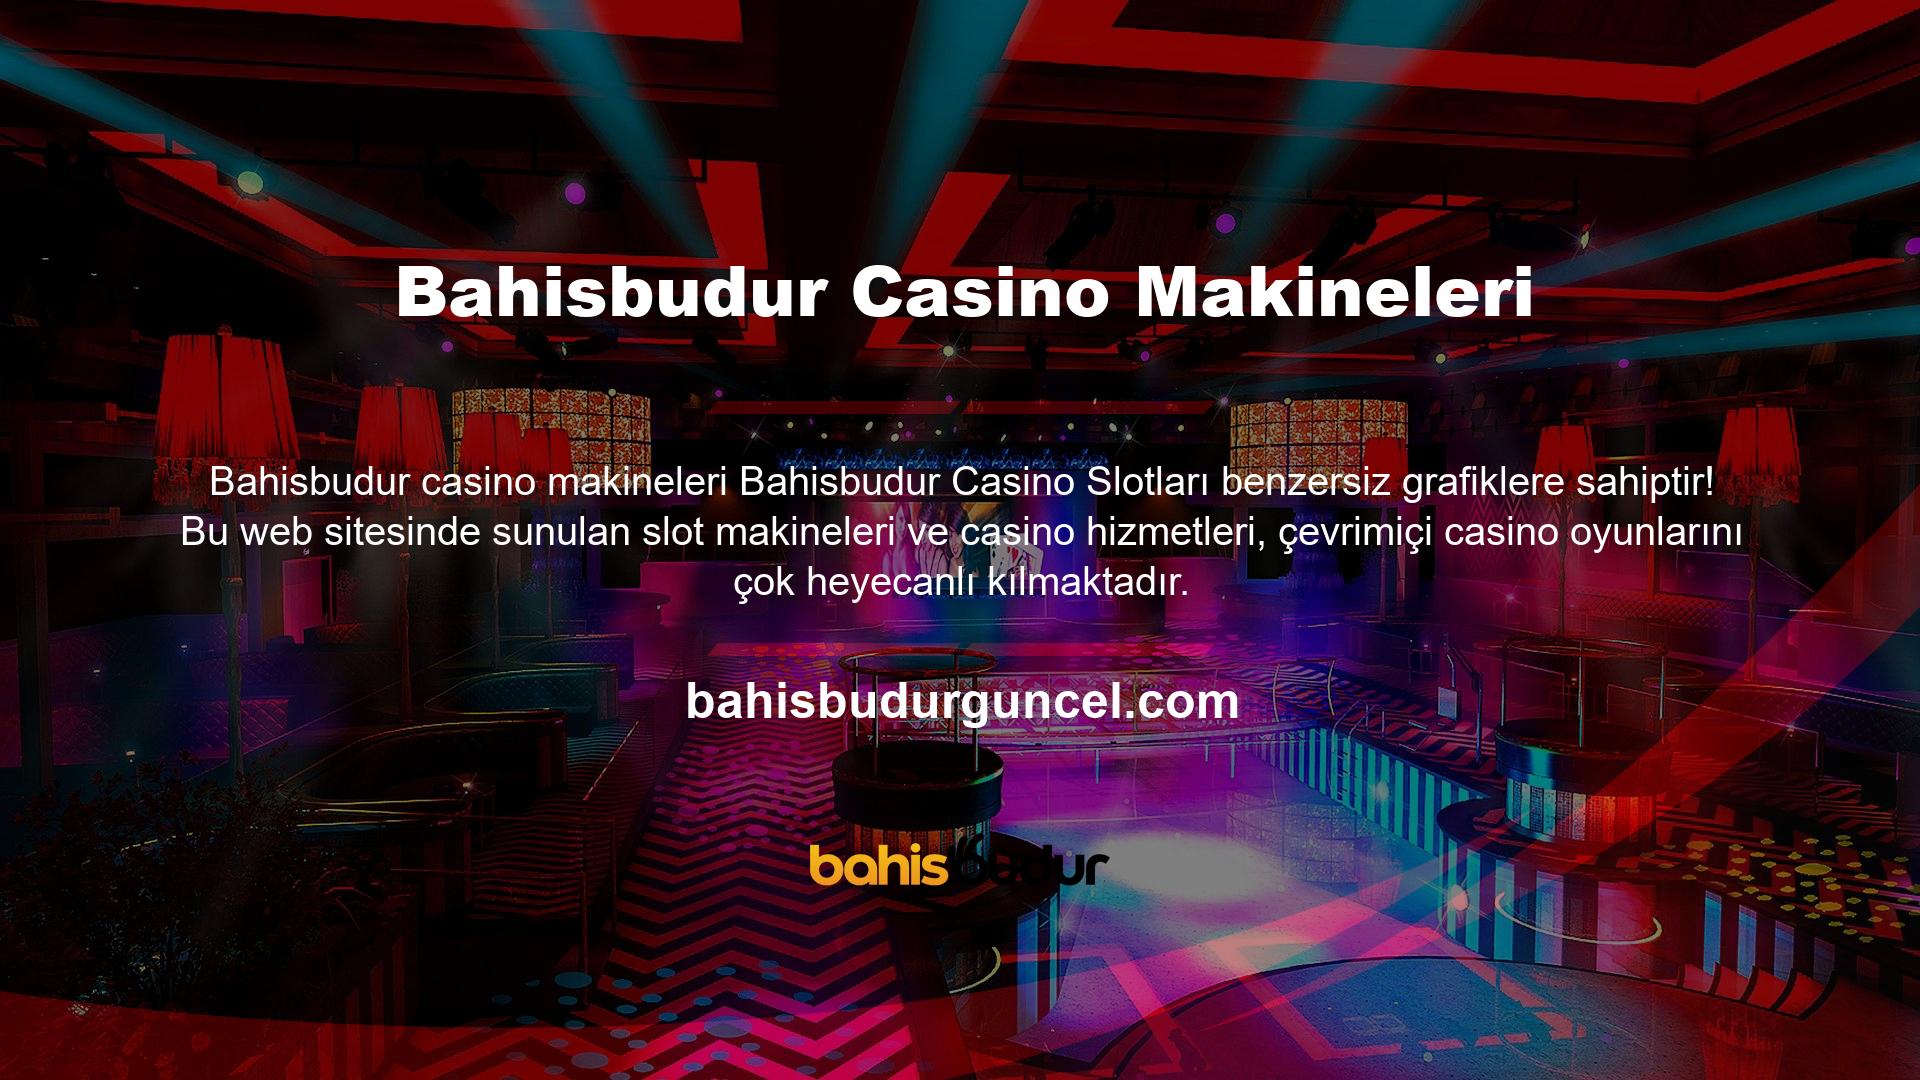 Şimdi siteye kaydolun ve en iyi yazılım markalarının casino slotlarında şansınızı deneyin